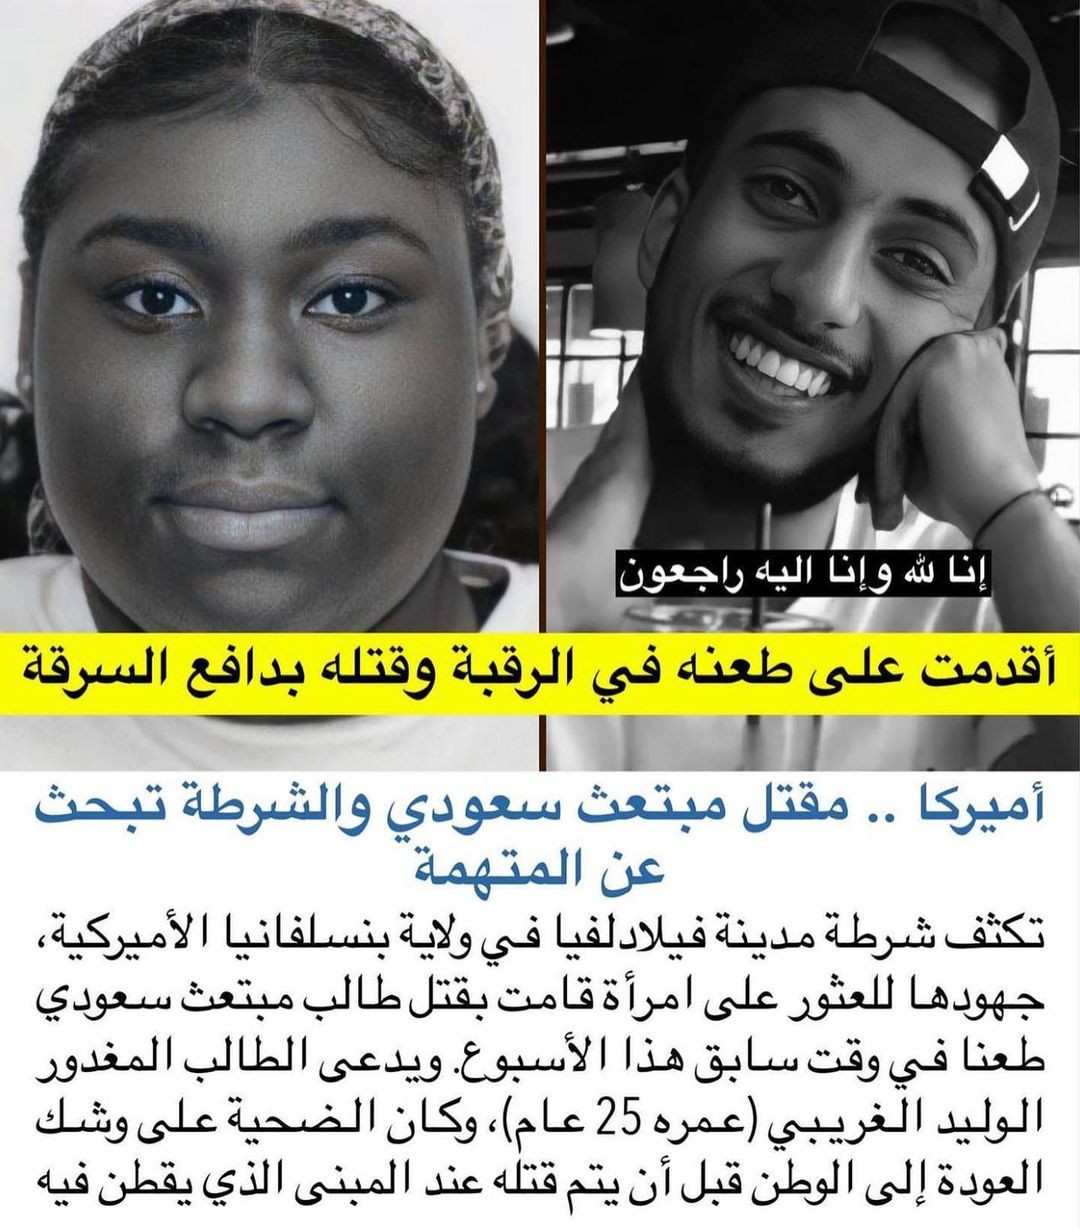 ما اسم الفتاة التي قتلت الشاب السعودي الوليد الغريبي